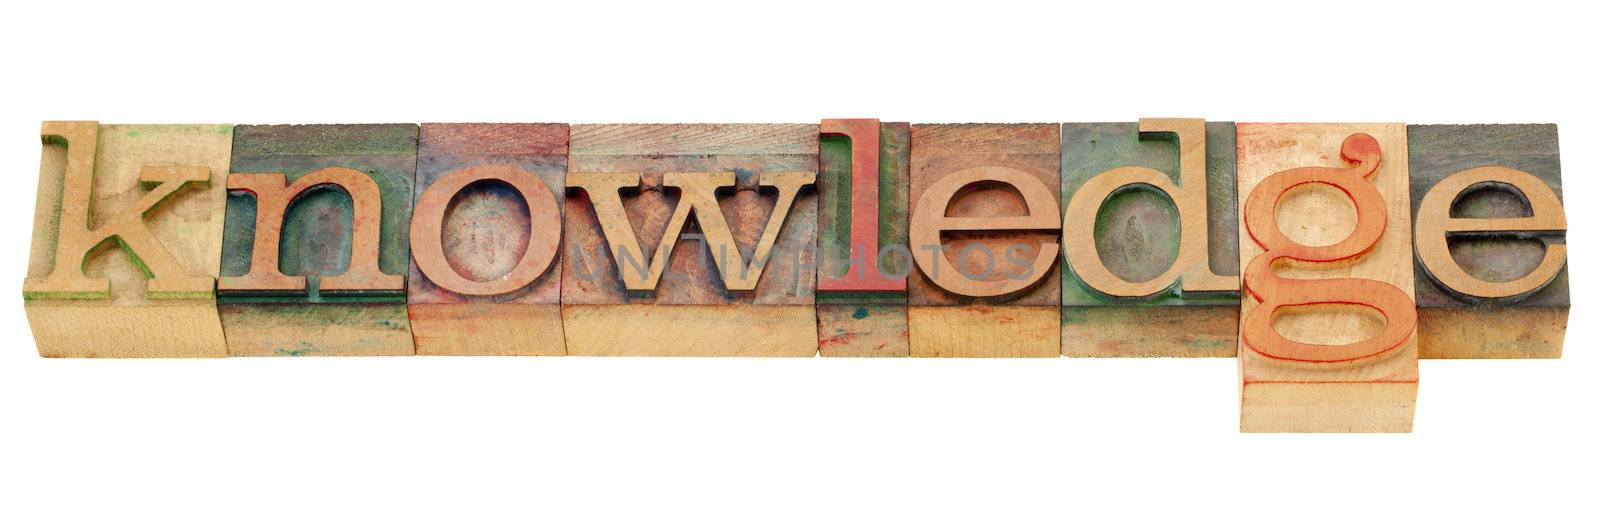 knowledge word in letterpress type by PixelsAway